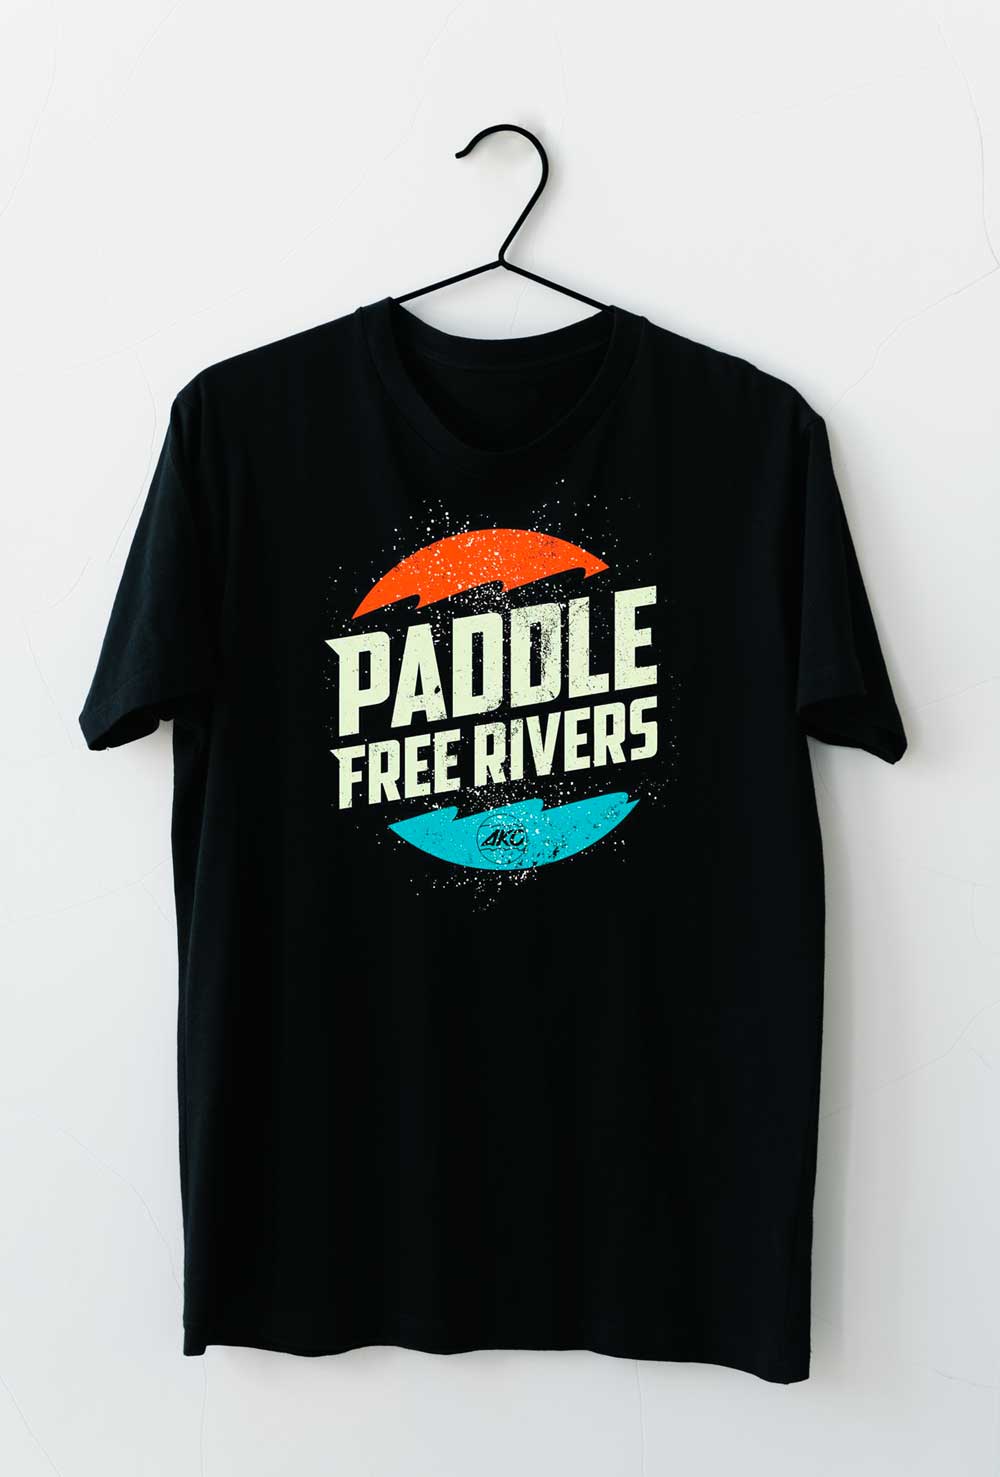 Spade Kayak Paddle Free Rivers